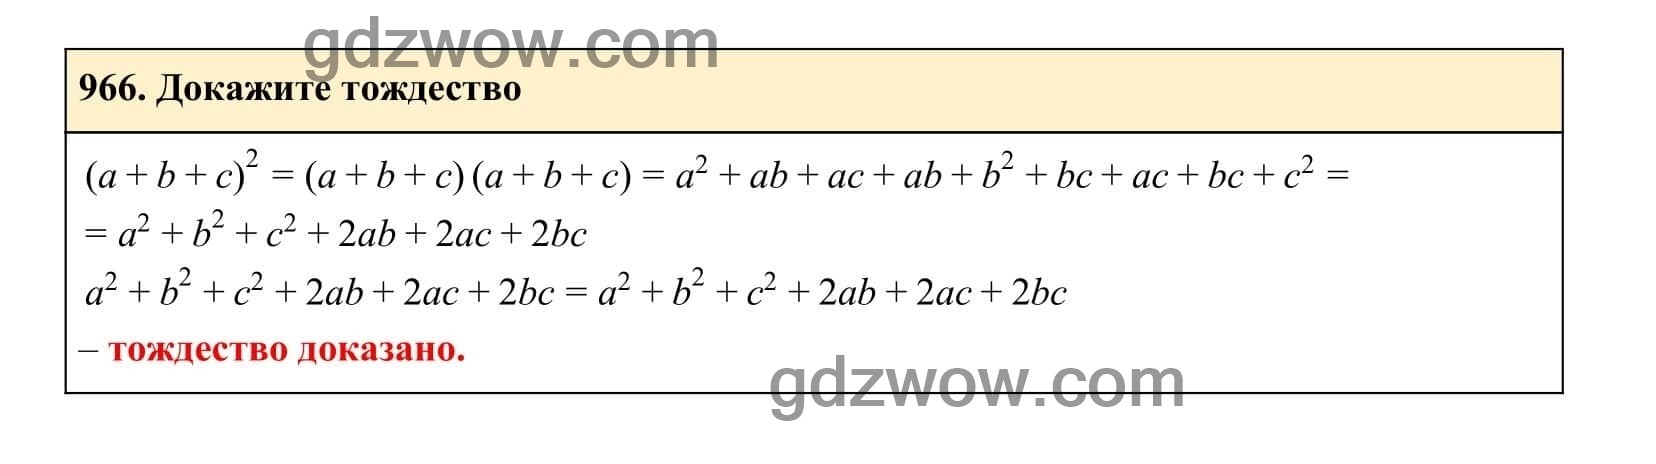 Упражнение 966 - ГДЗ по Алгебре 7 класс Учебник Макарычев (решебник) - GDZwow